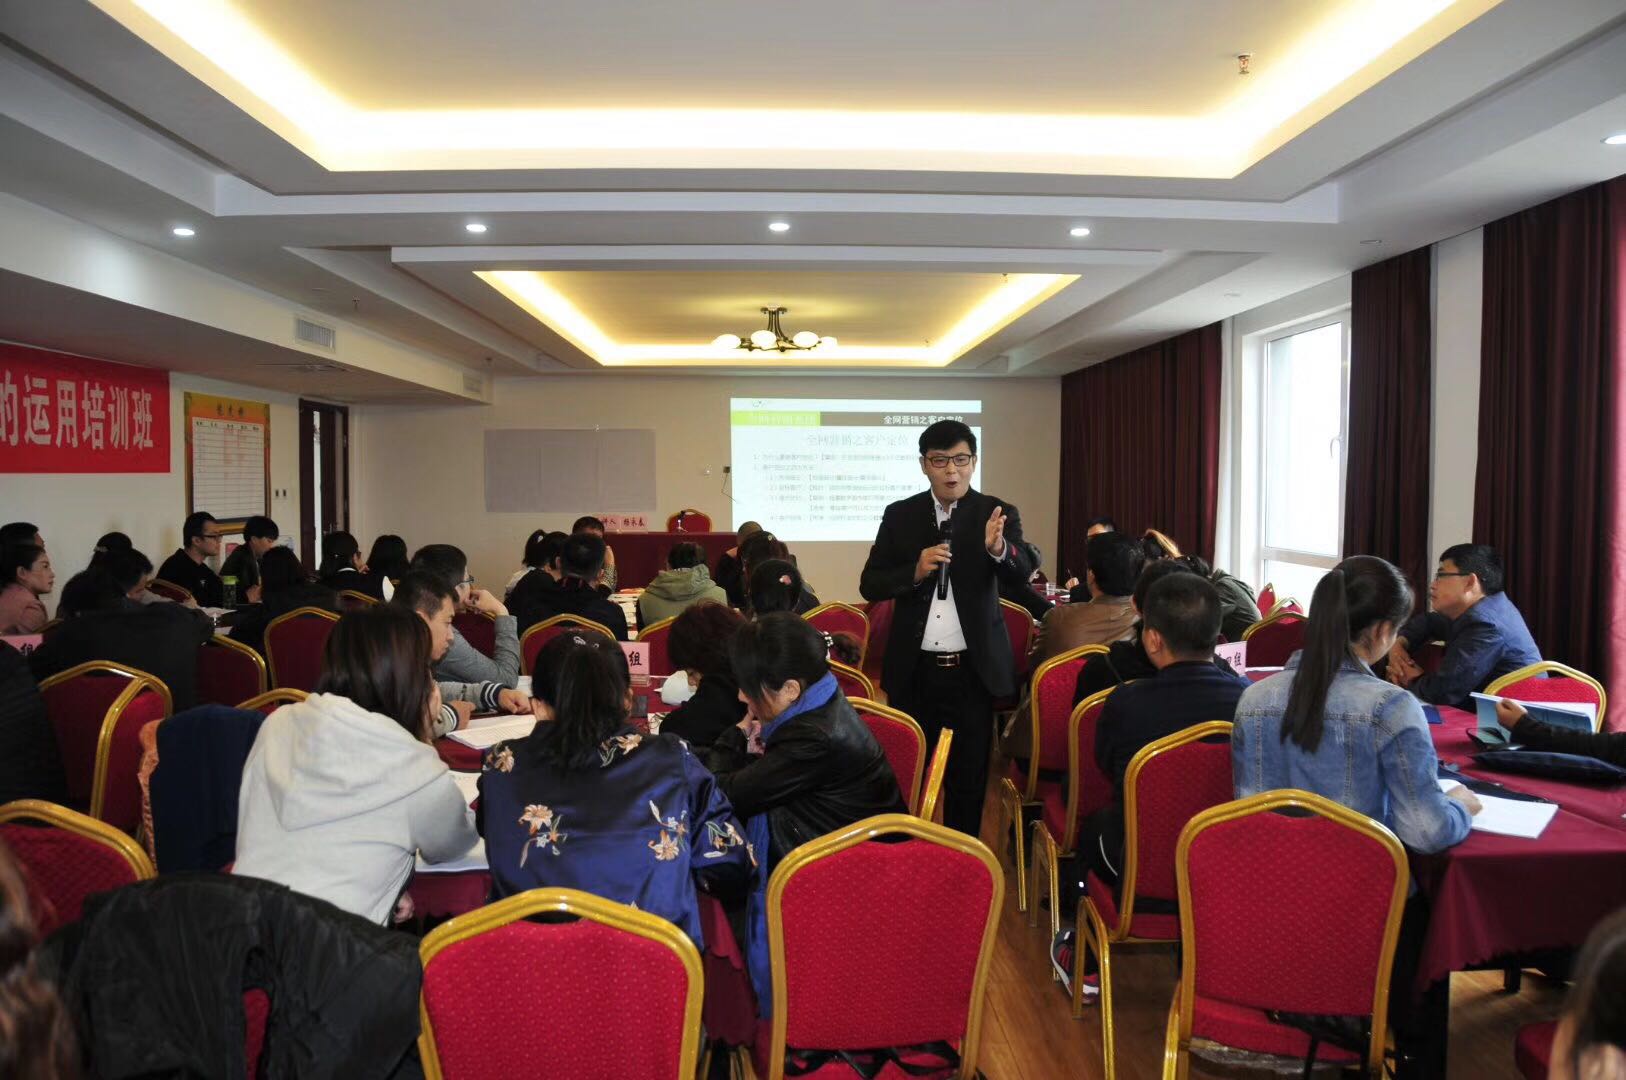 杨永春老师为山西晋城中小企业局主讲《互联网+全网营销》